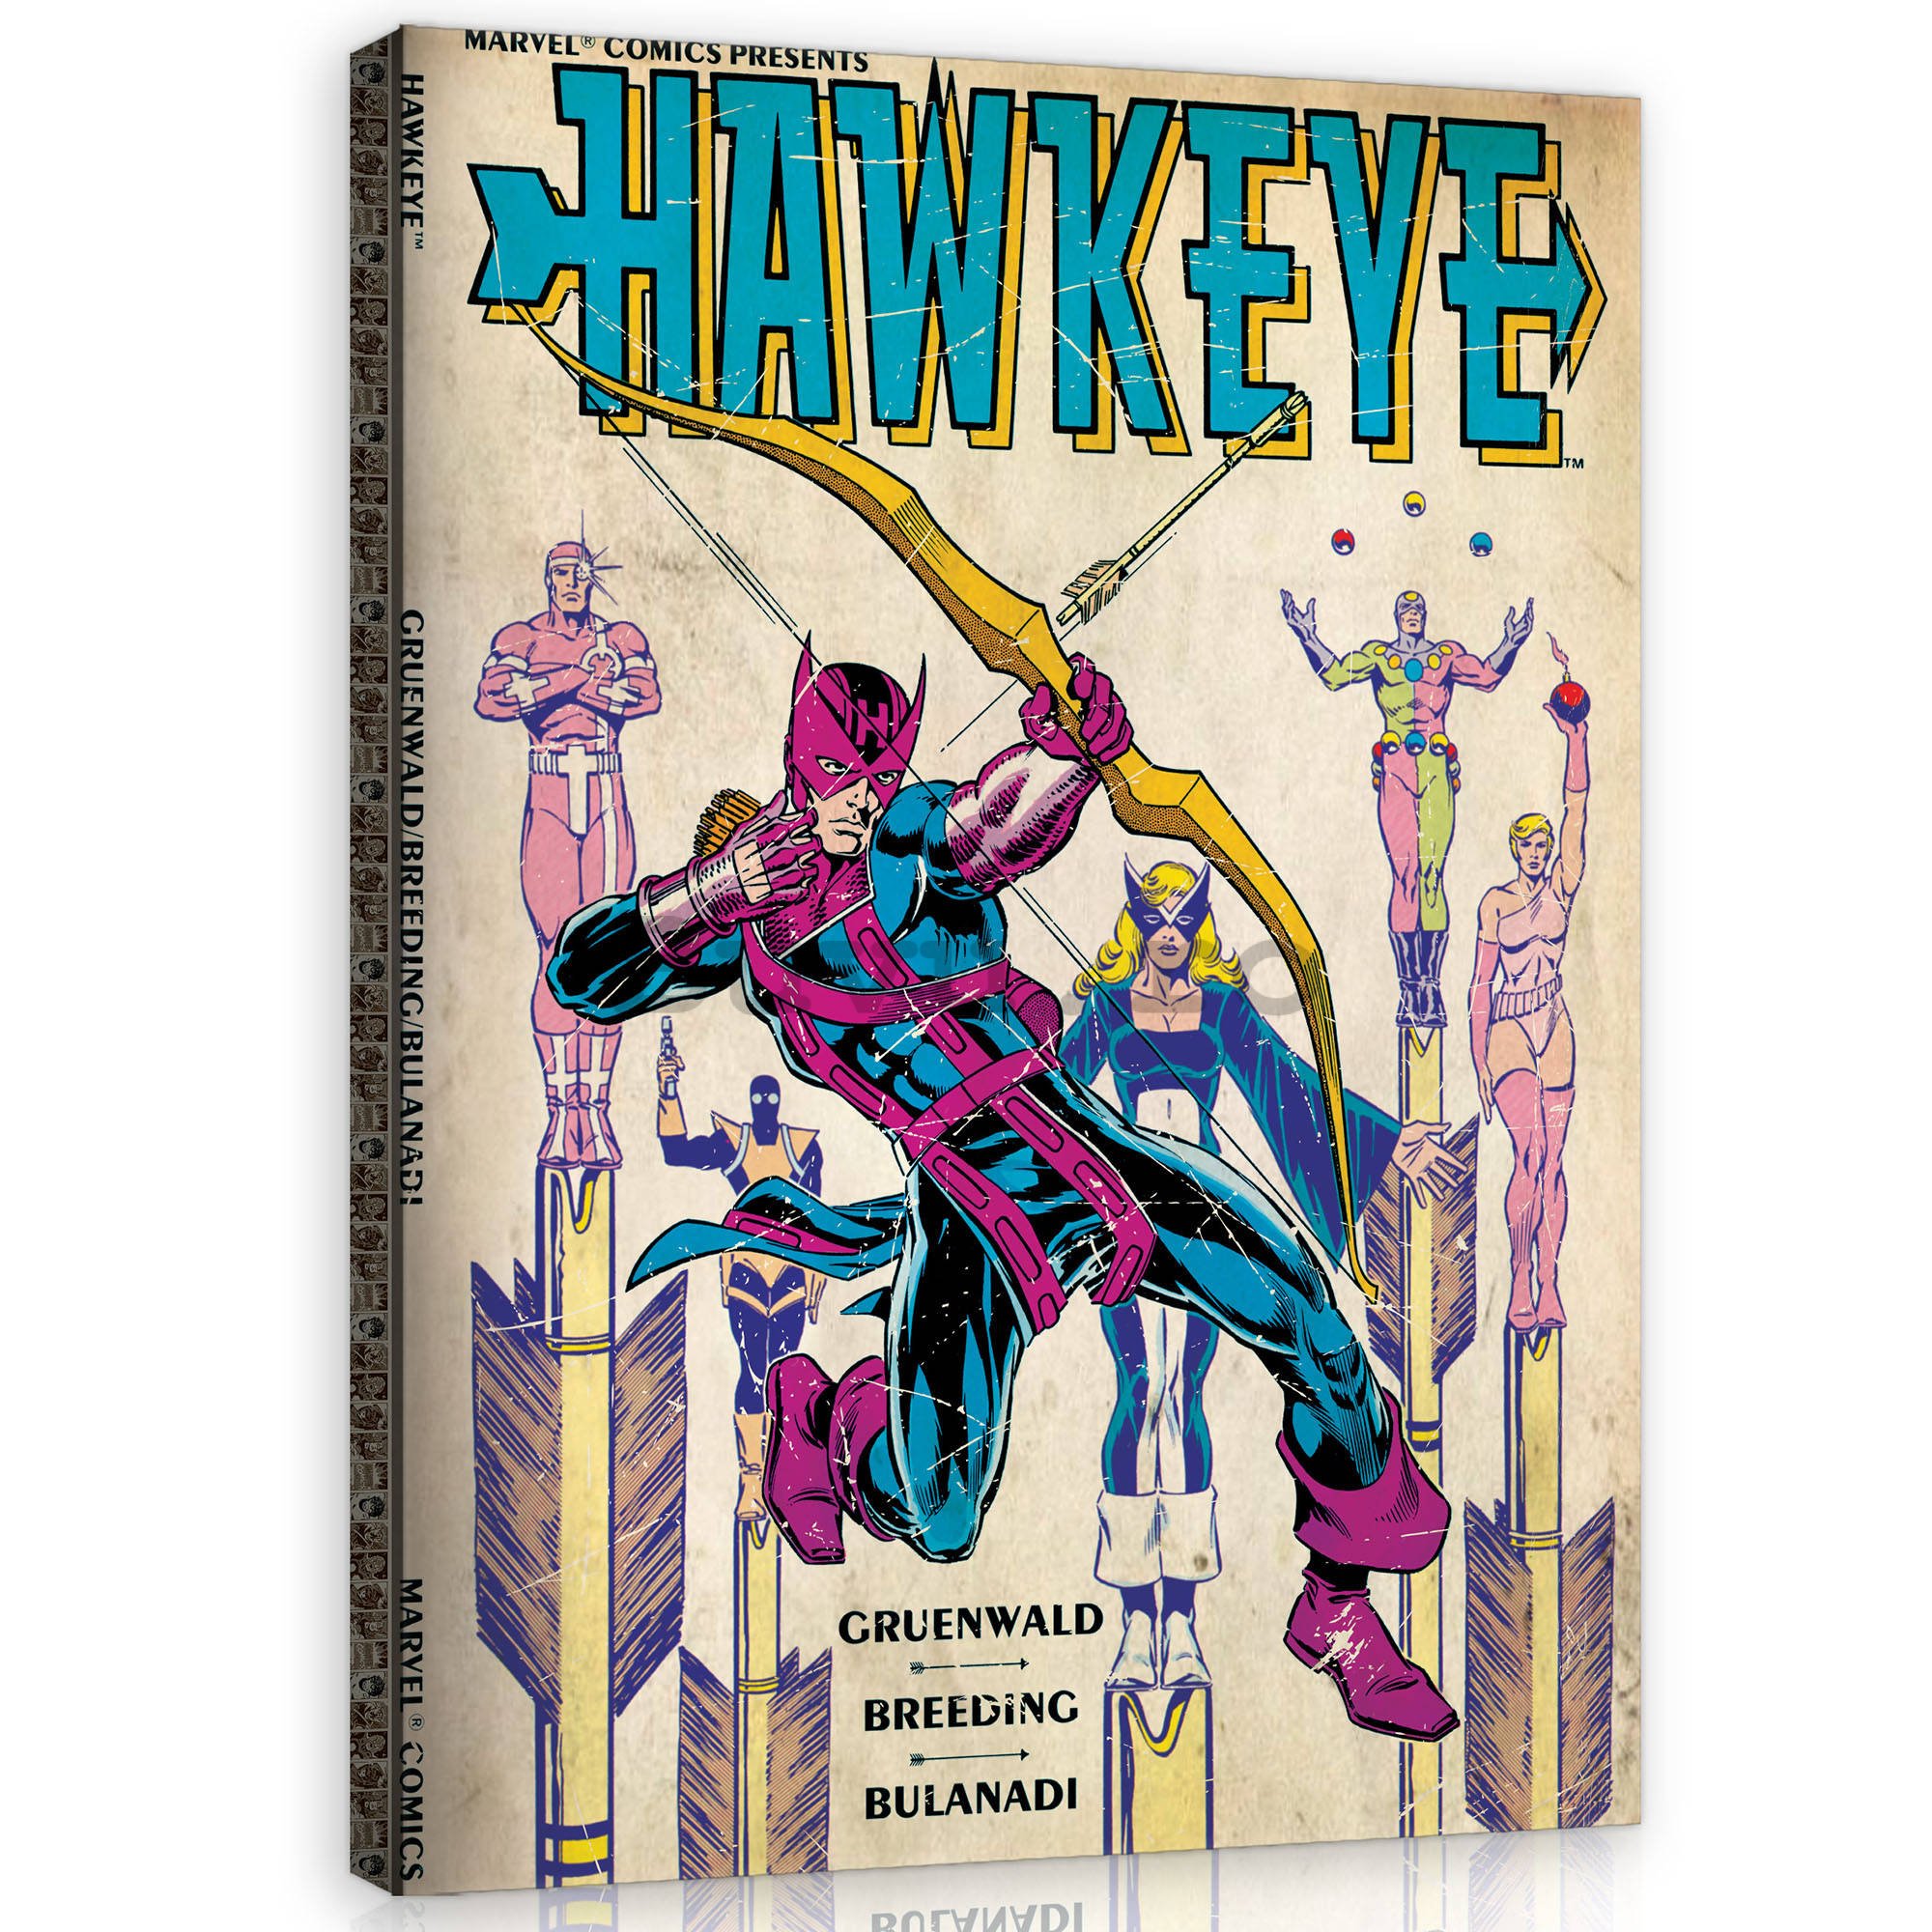 Tablou canvas: Hawkeye - 60x80 cm